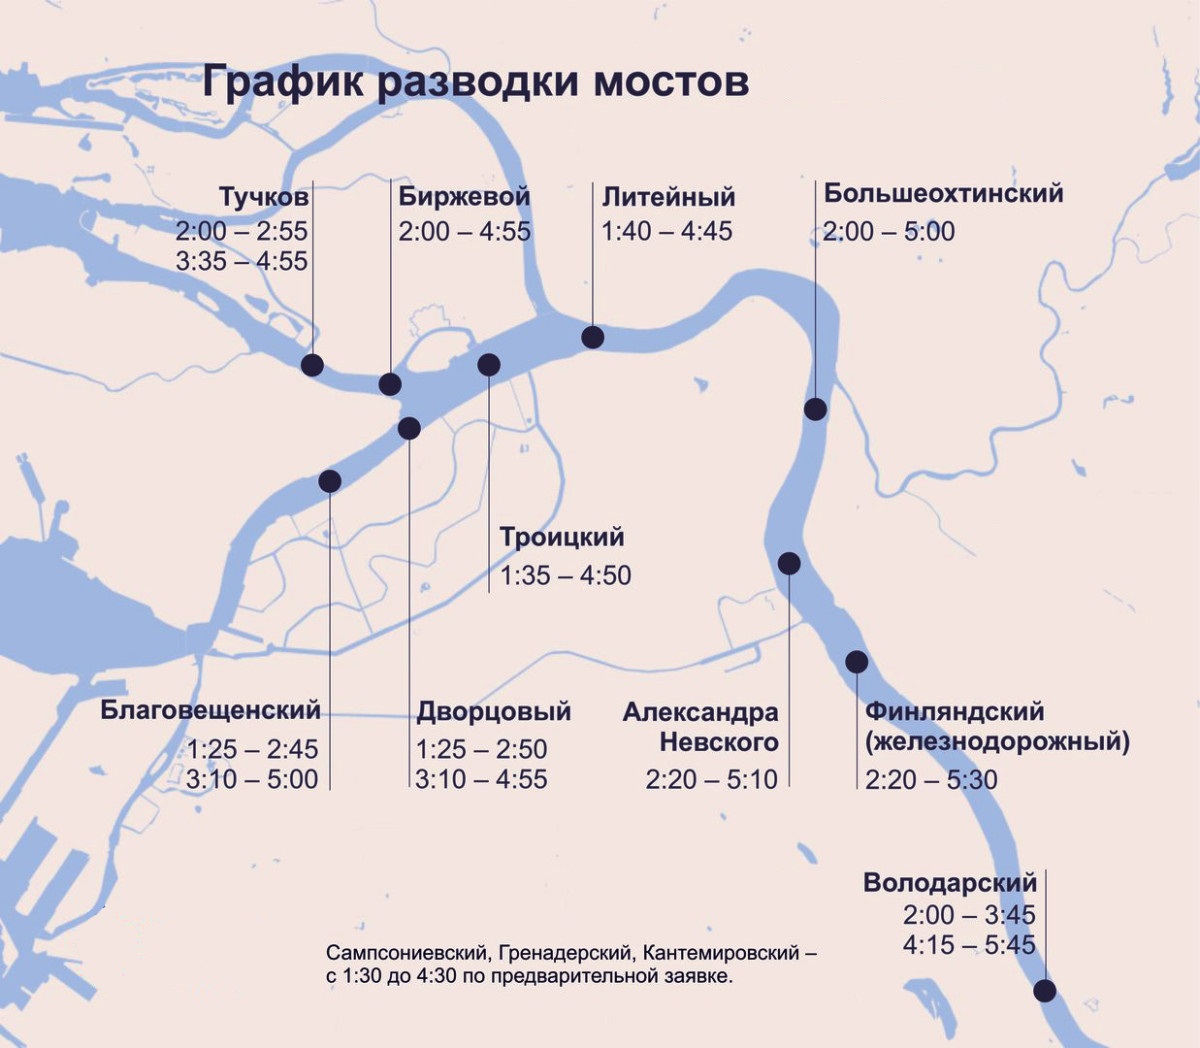 В апреле разводят мосты в питере. Карта развода мостов в Санкт-Петербурге. Карта мостов Санкт-Петербурга с разводом мостов. Карта разводных мостов Санкт-Петербурга 2023. Карта разводных мостов в Питере.